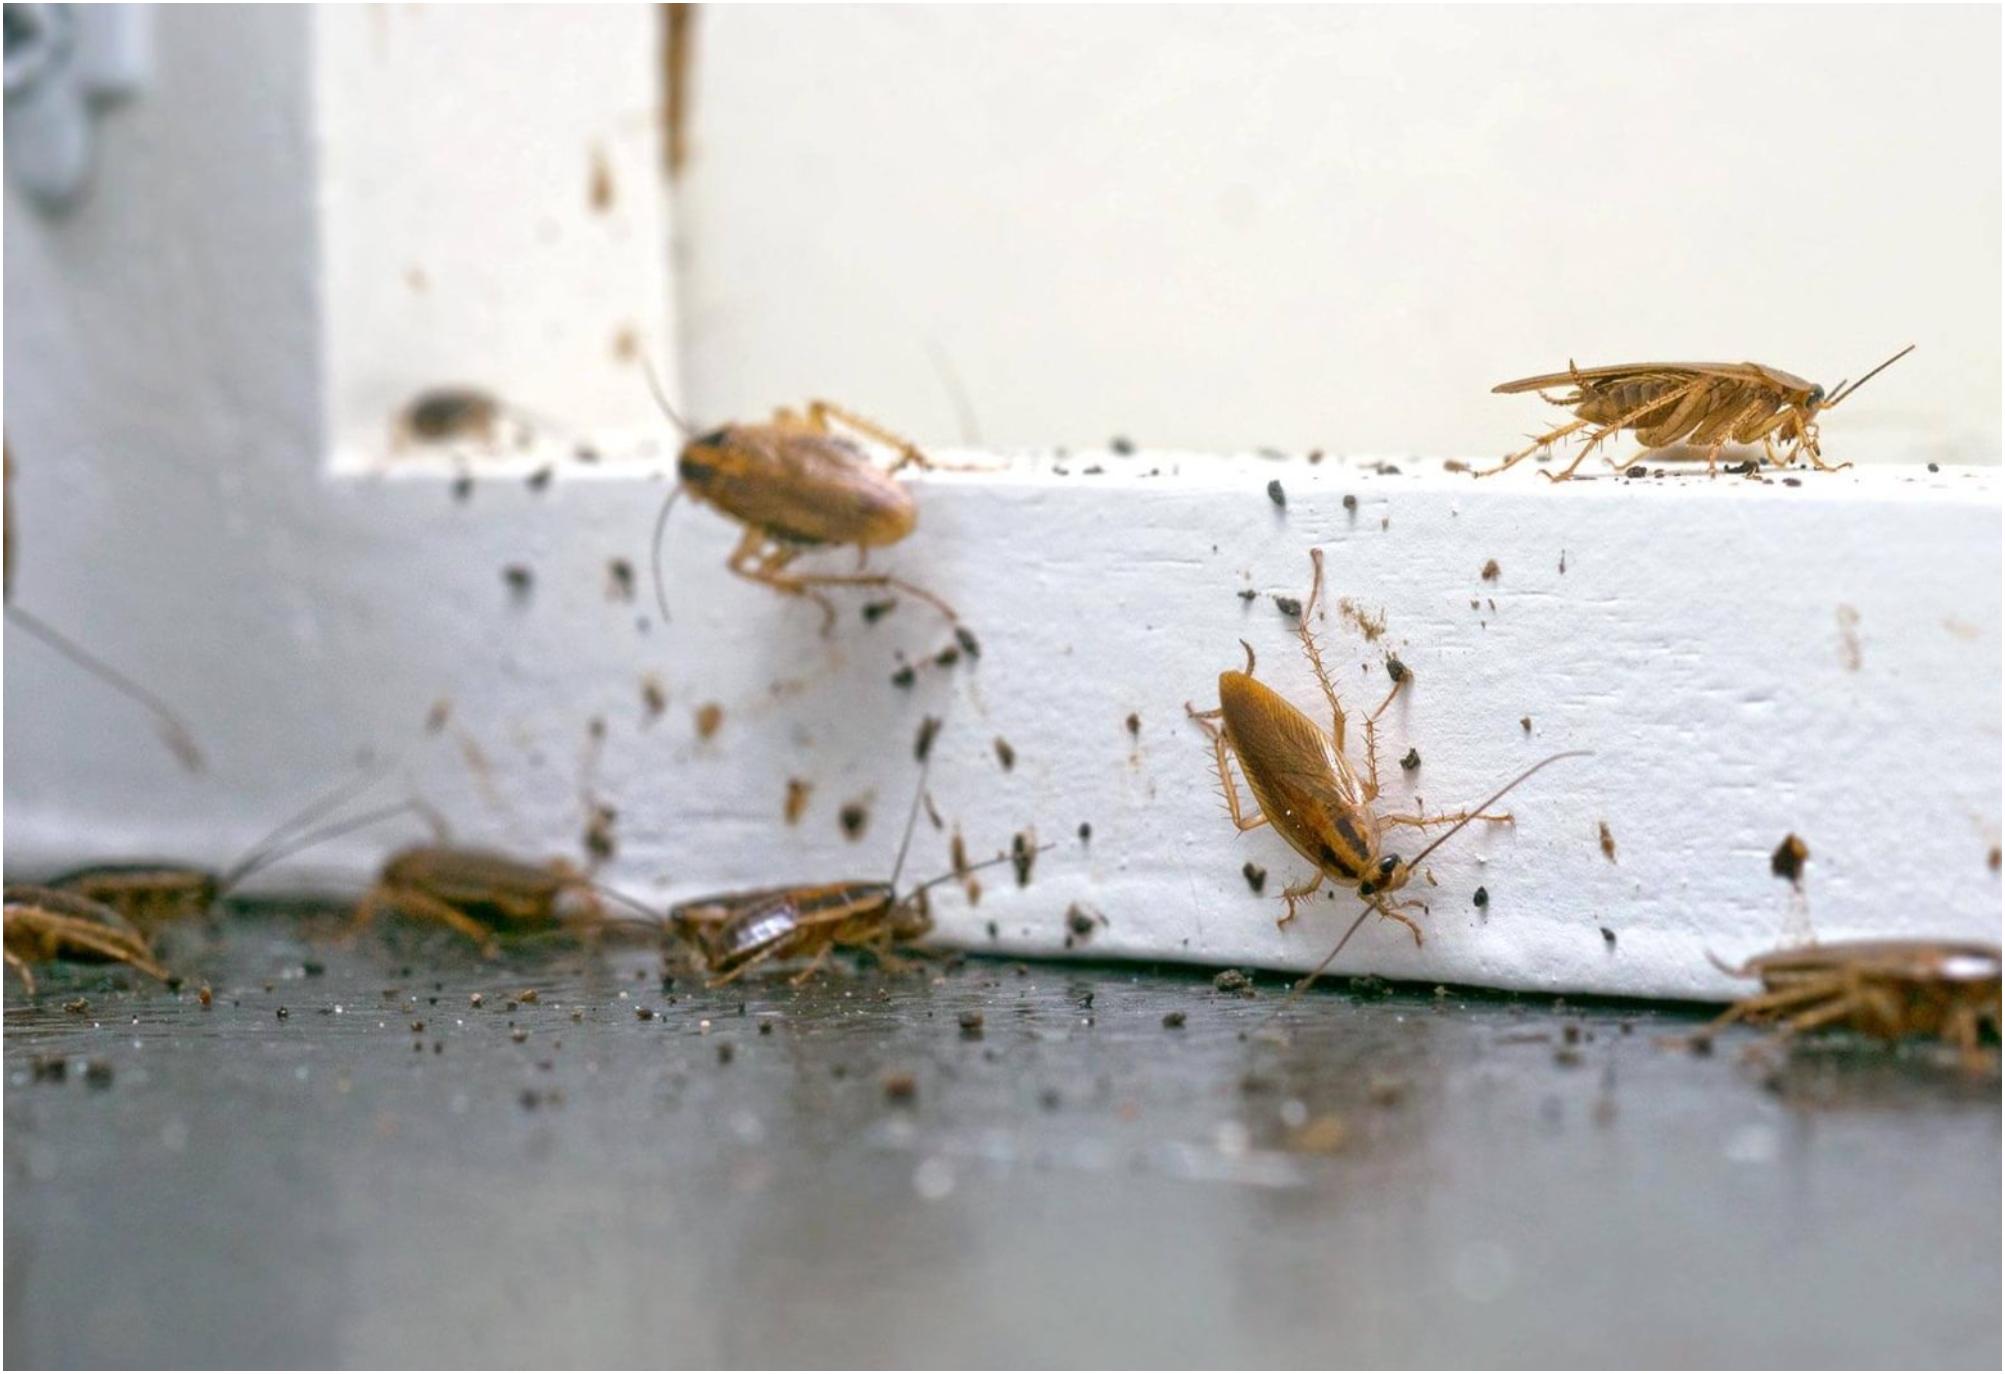 Malí blonďatí švábi v kuchyni: Jak se jich jednou provždy zbavit